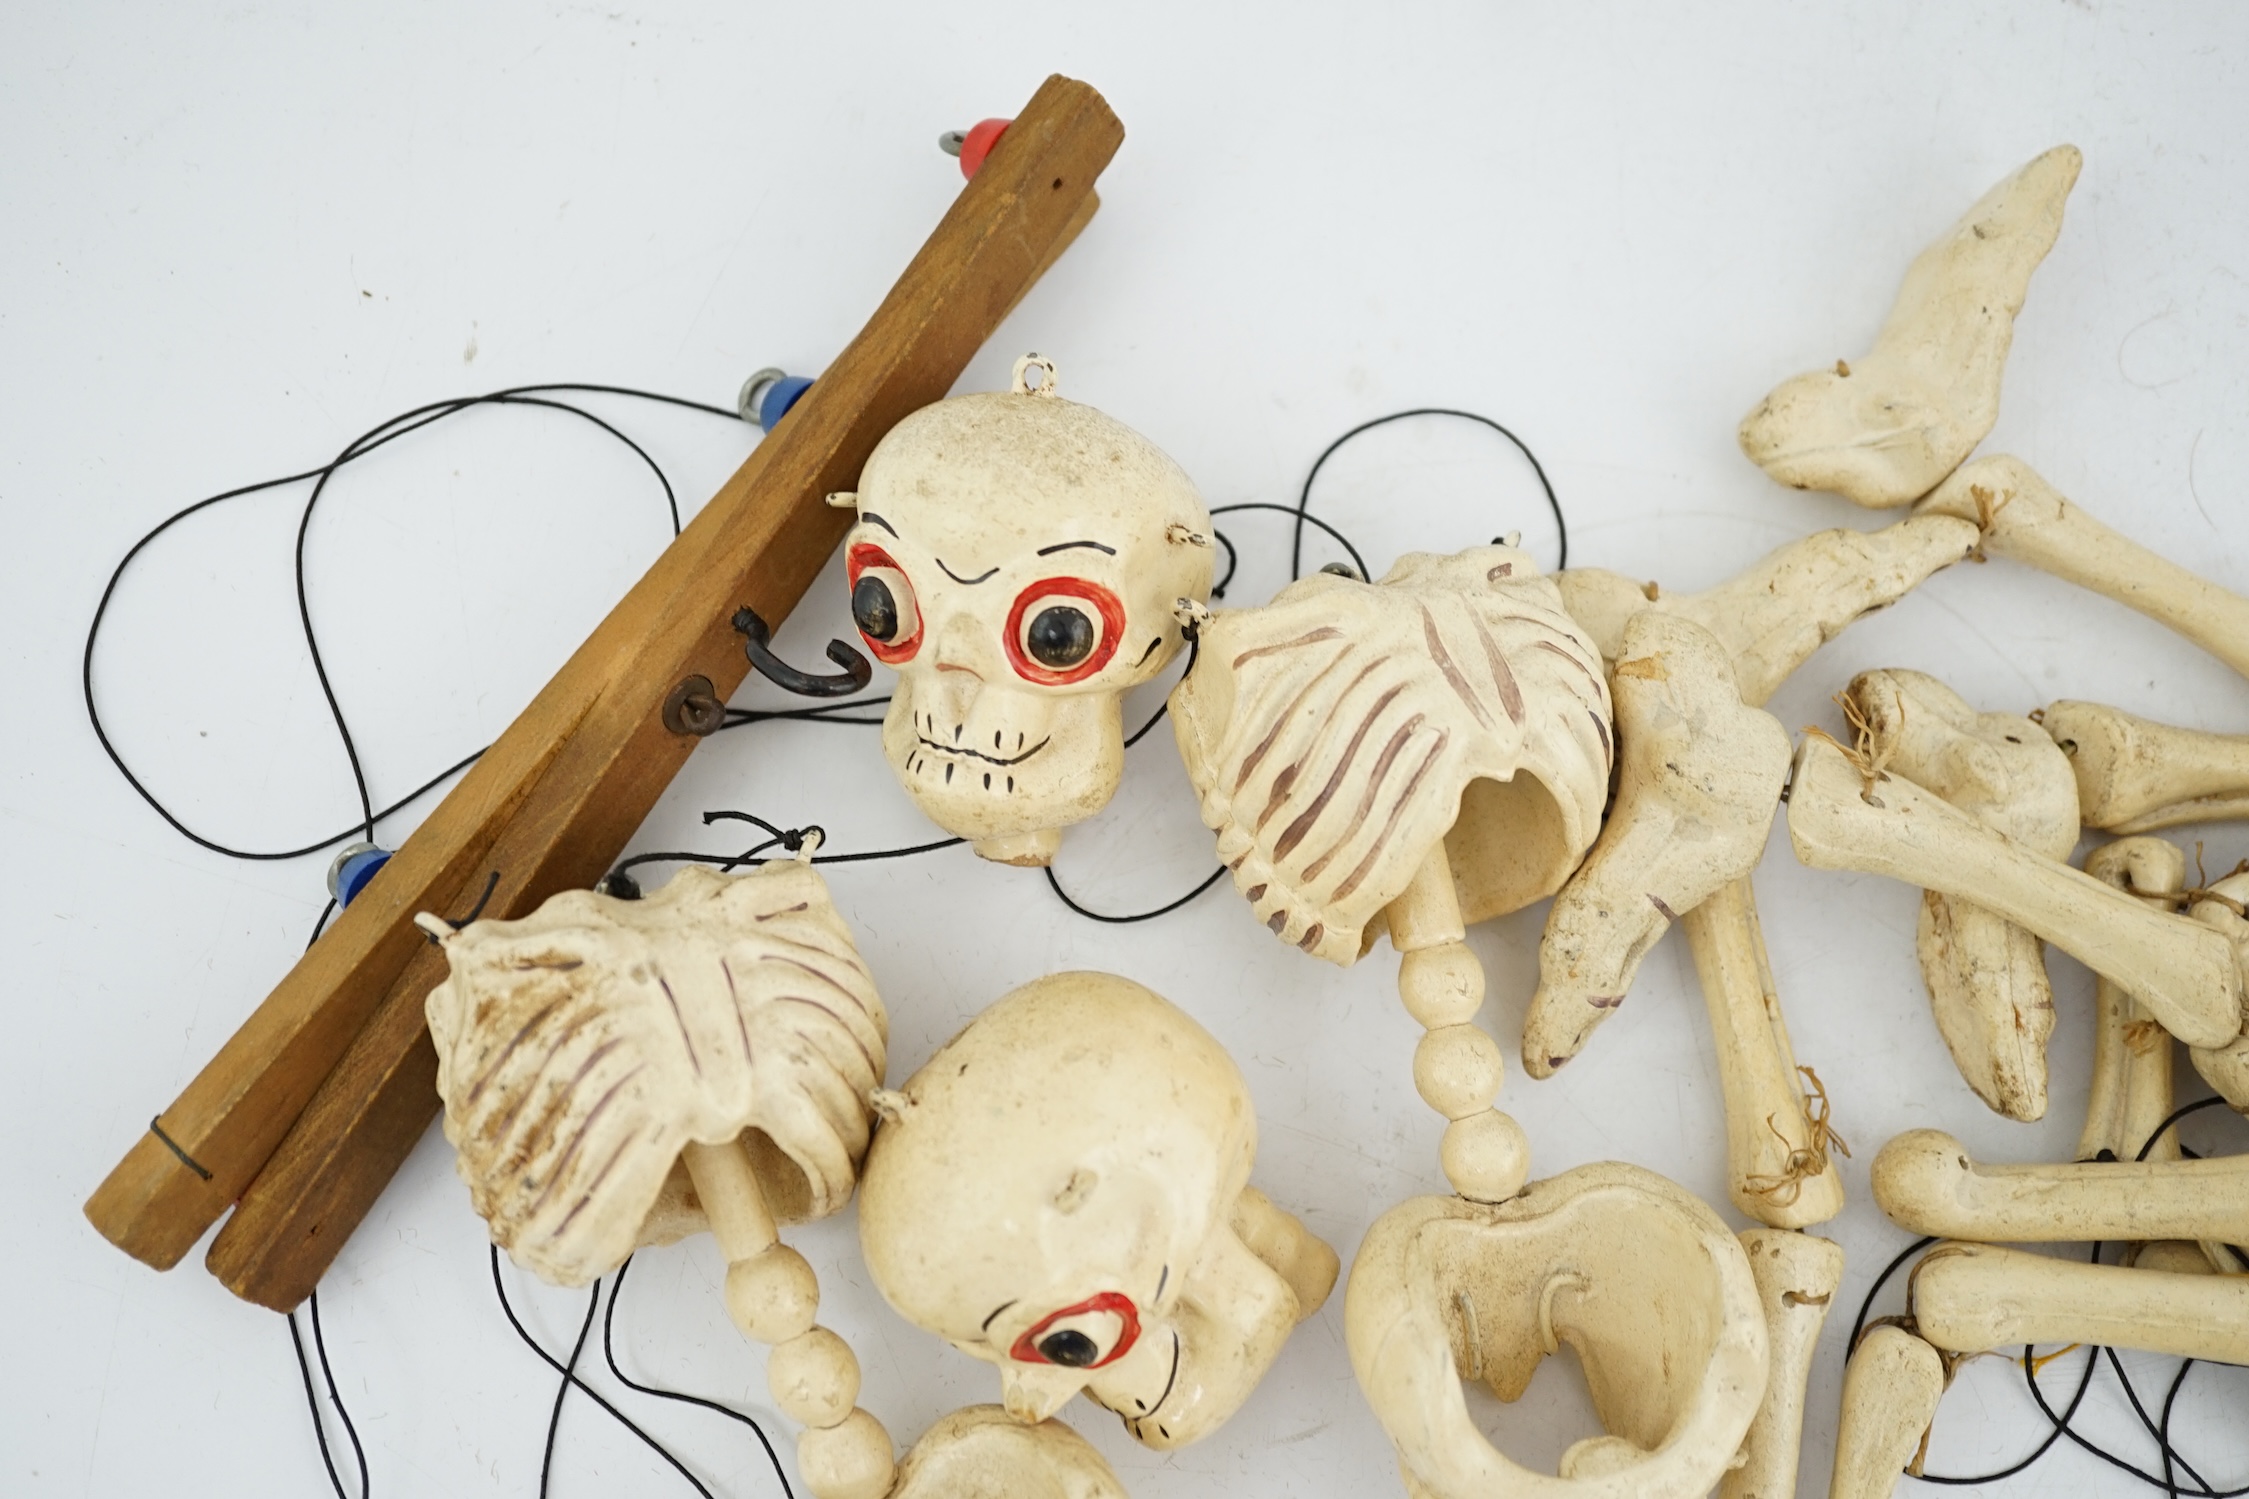 Two Pelham puppet skeletons